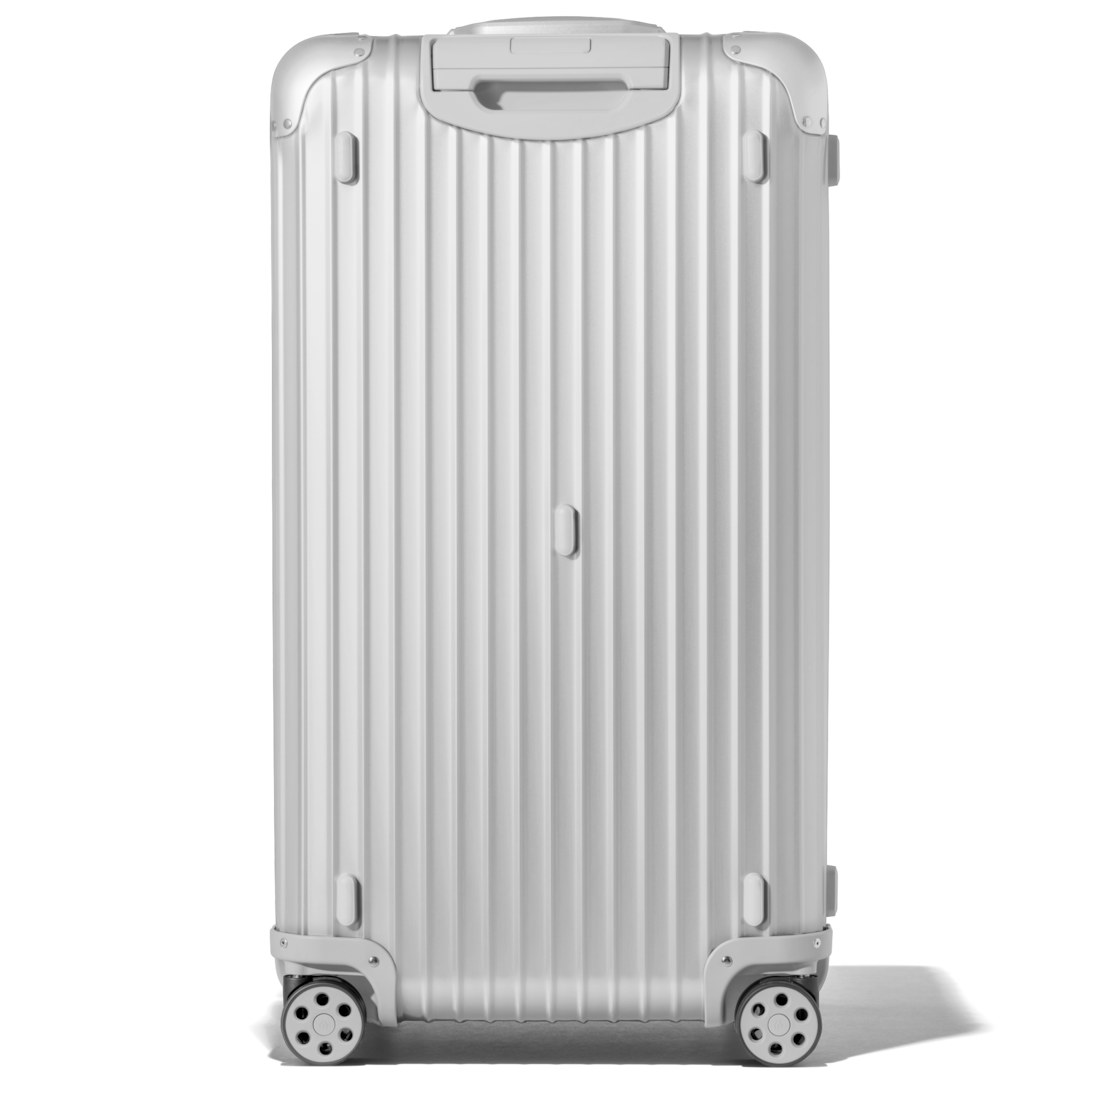 OFF-WHITE x RIMOWA Suitcase: Release Date, Price & More Info